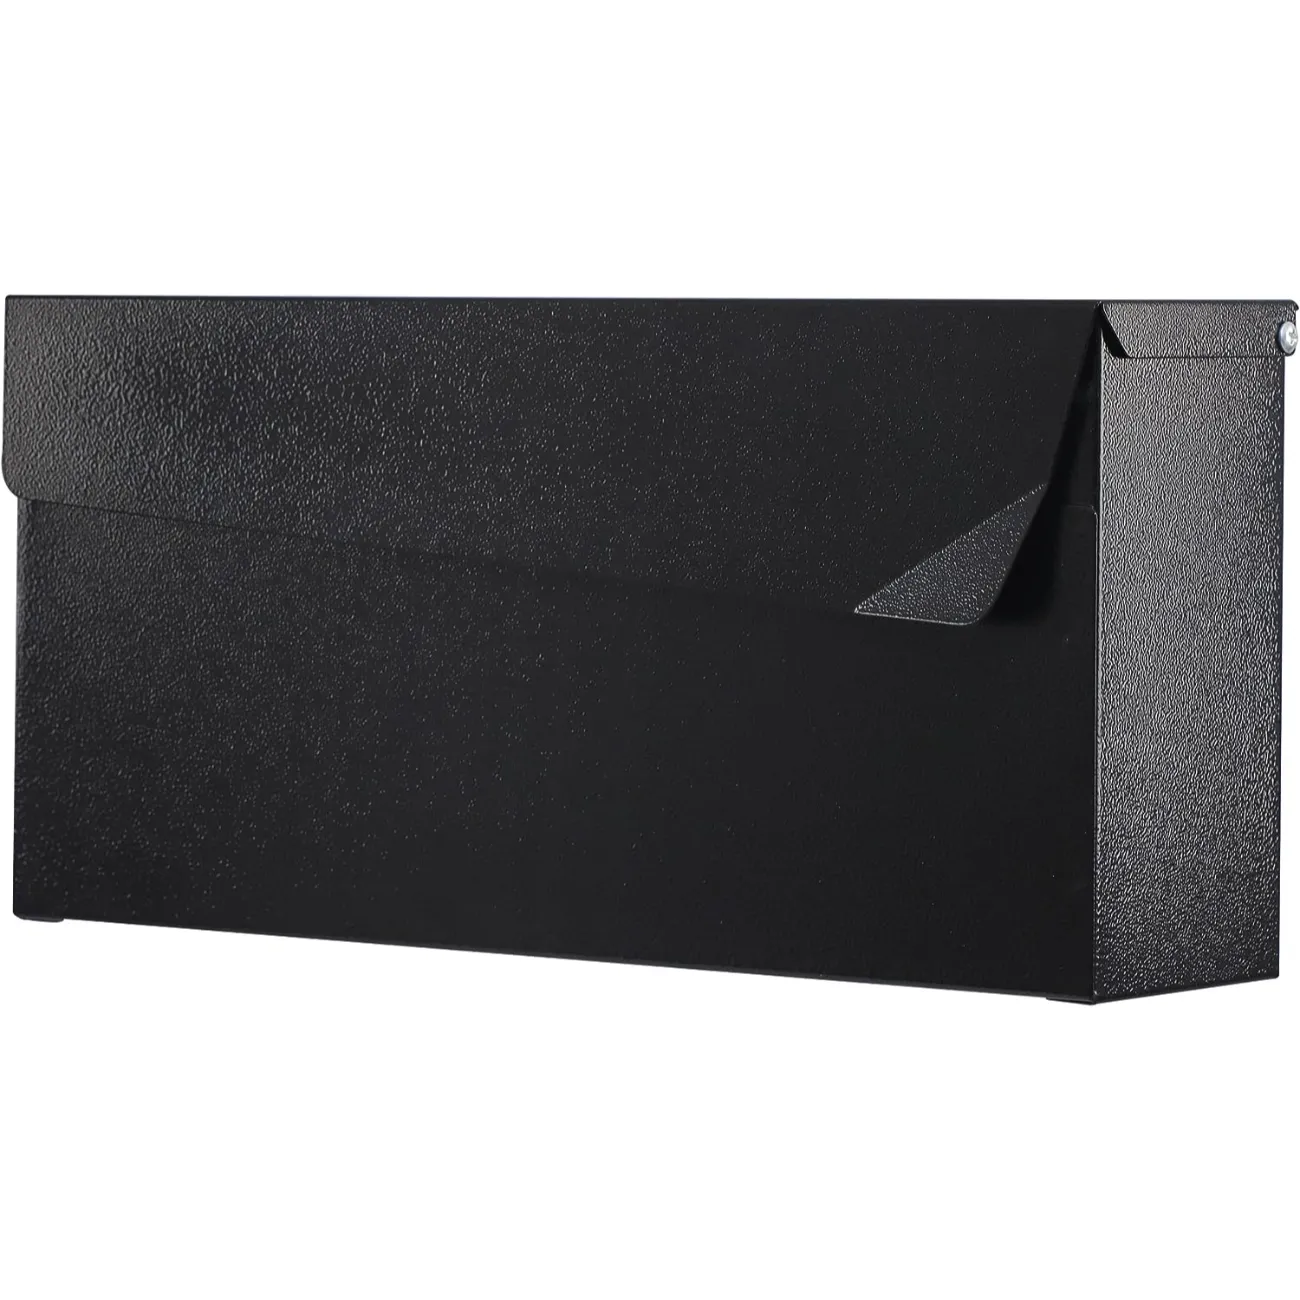 बॉक्स ऑफिस मेटल गैल्वेनाइज्ड टिन मेल बॉक्स ब्लैक कलर मेलबॉक्स के लिए बॉक्स लिफाफे काले रंग मेलबॉक्स दीवार